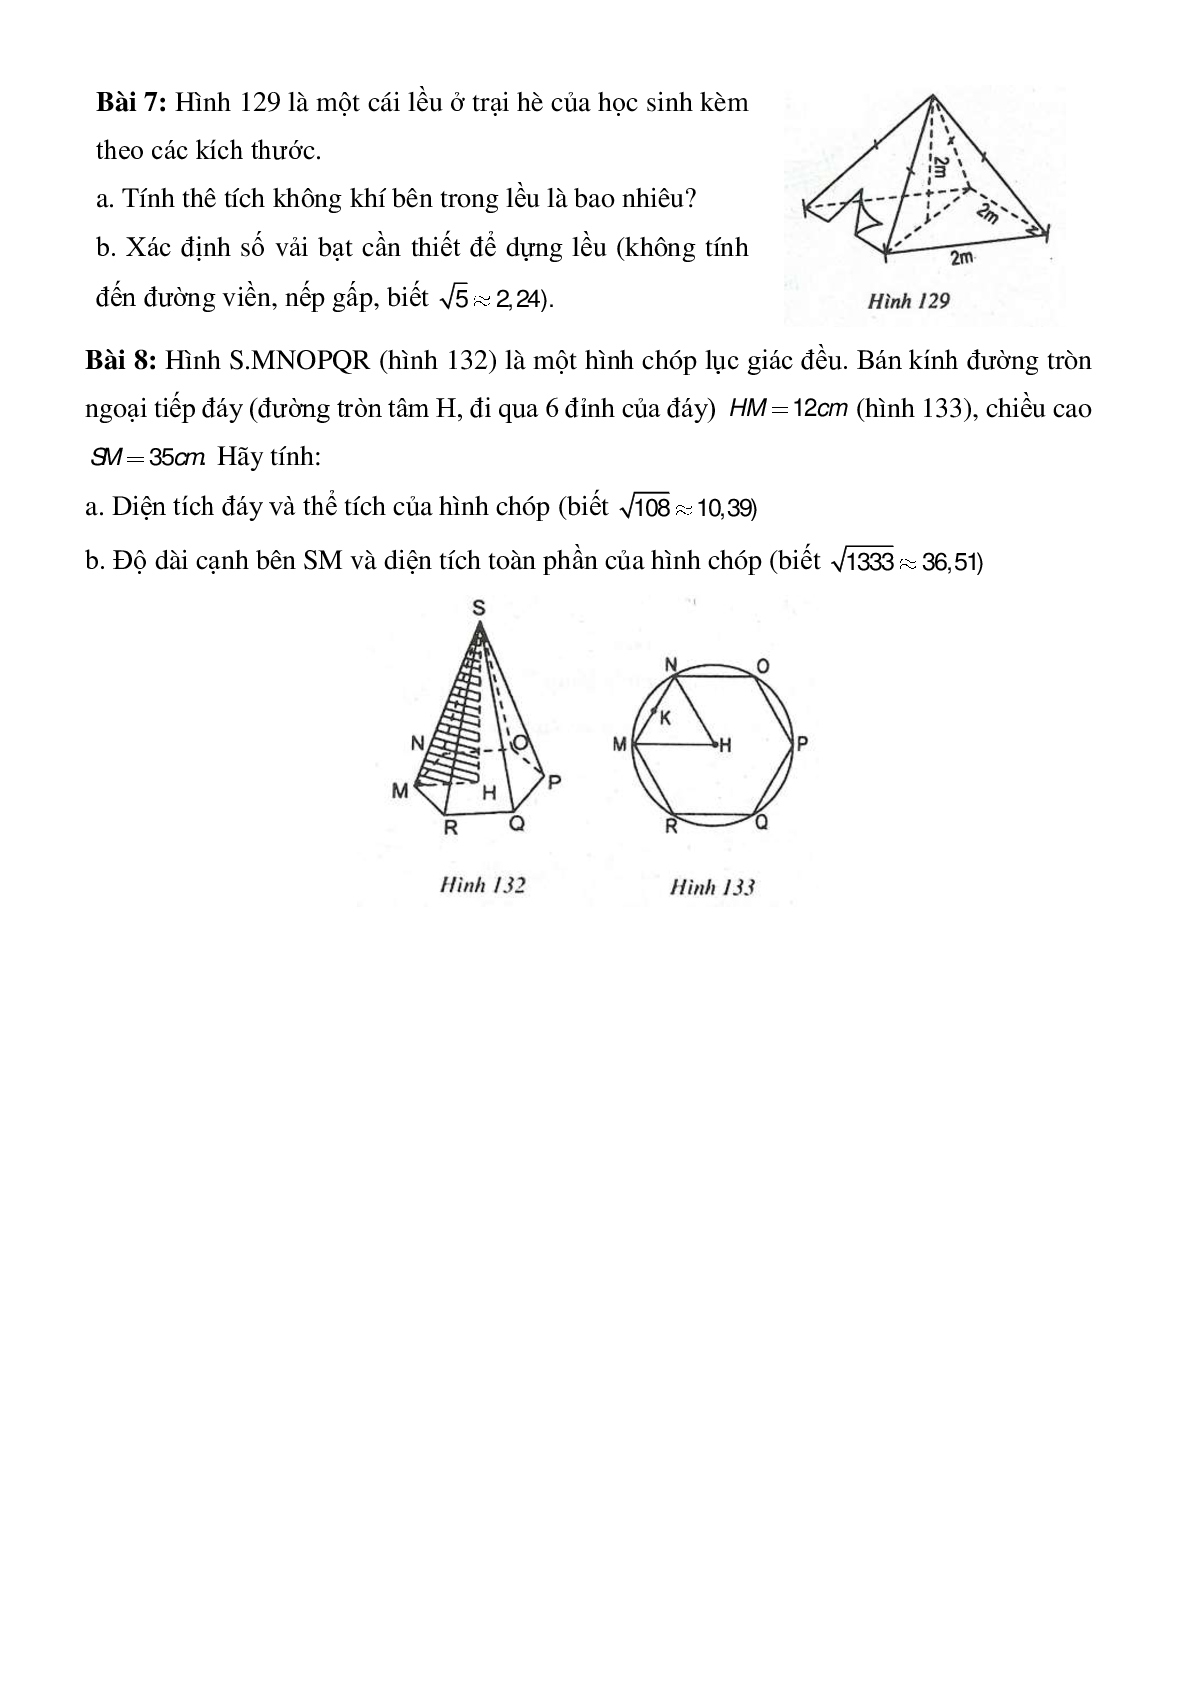 Diện tích xung quanh, diện tích toàn phần và thể tích của hình chóp đều (trang 3)